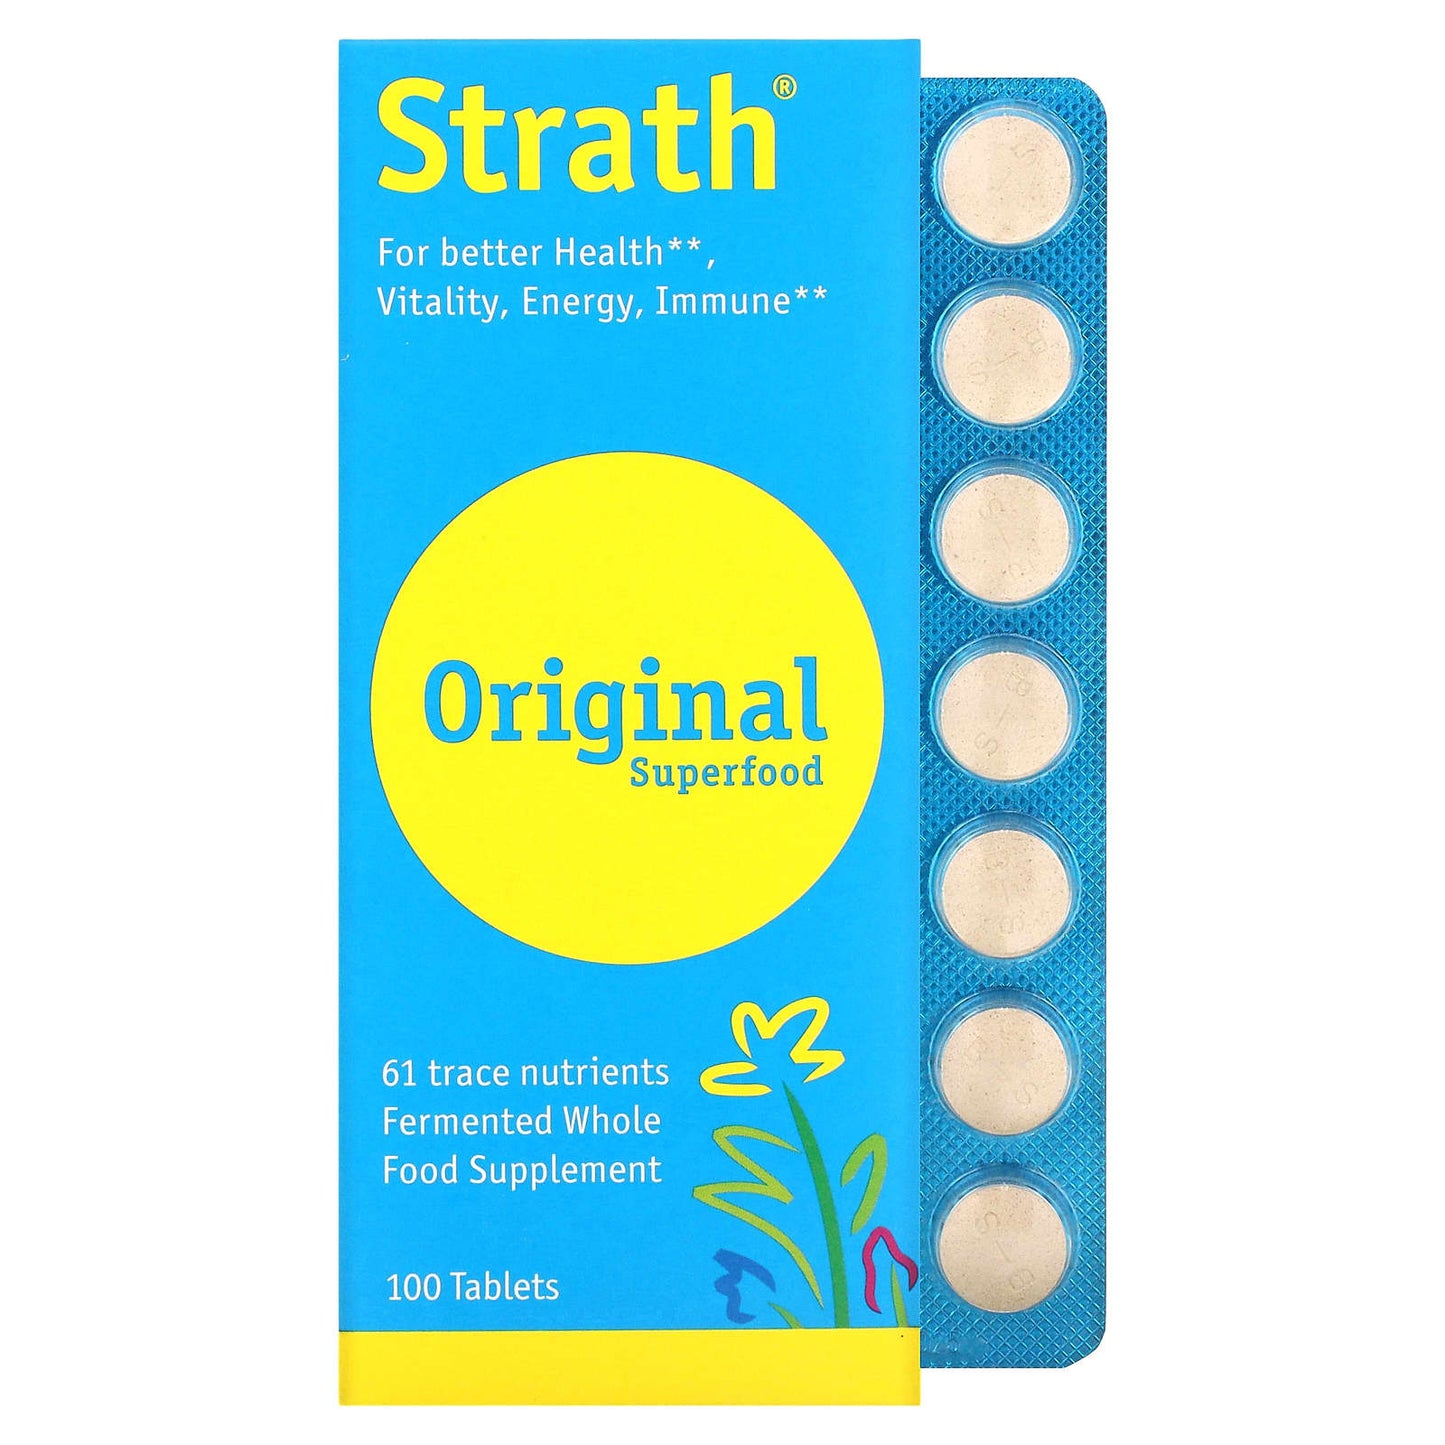 Bio-Strath-Strath-Original Superfood-100 Tablets